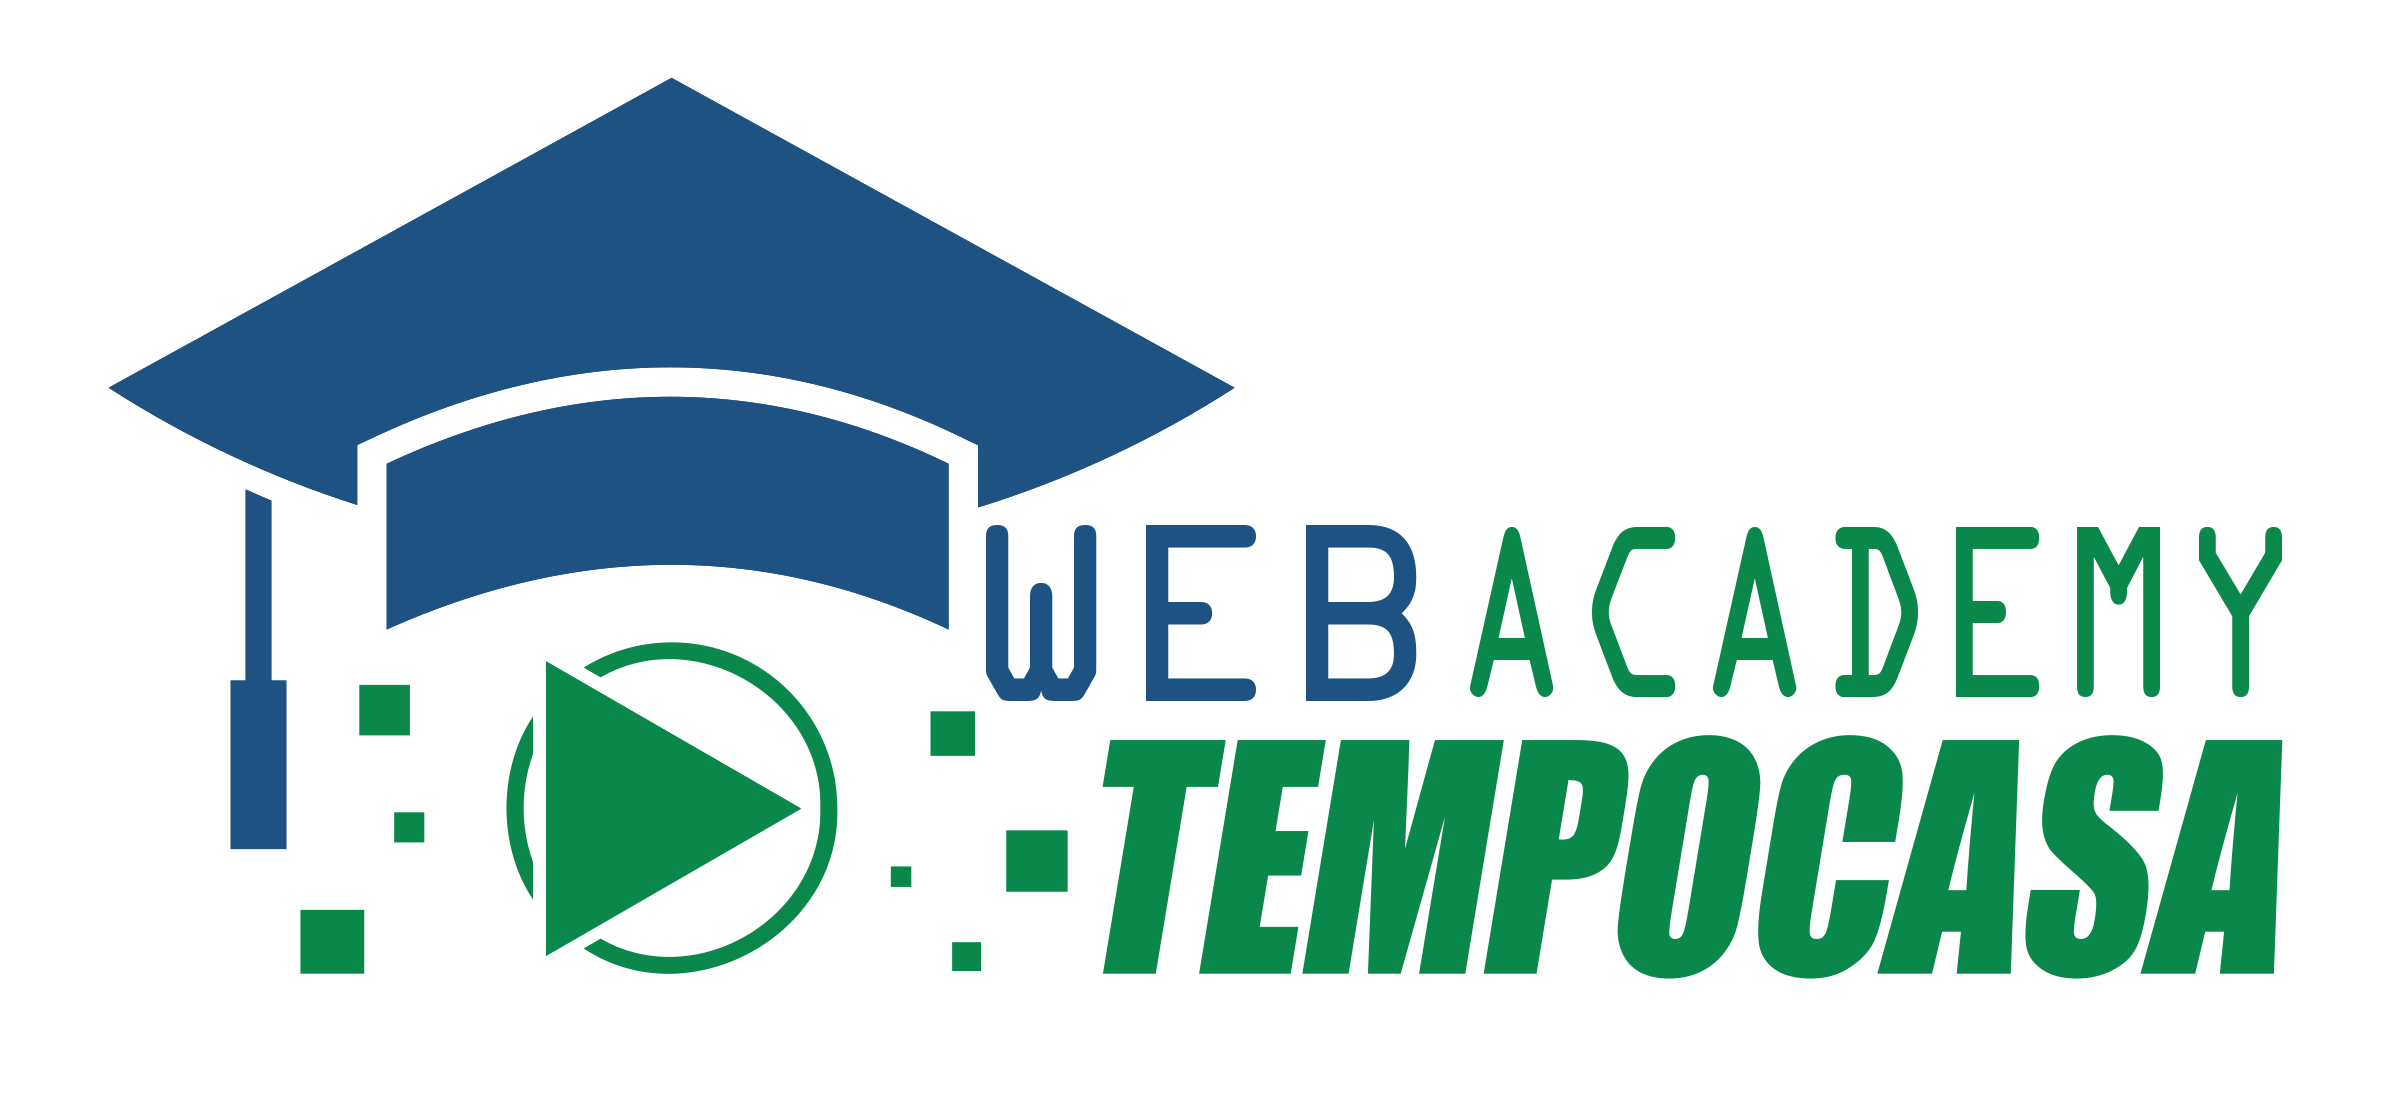 Web Academy Tempocasa